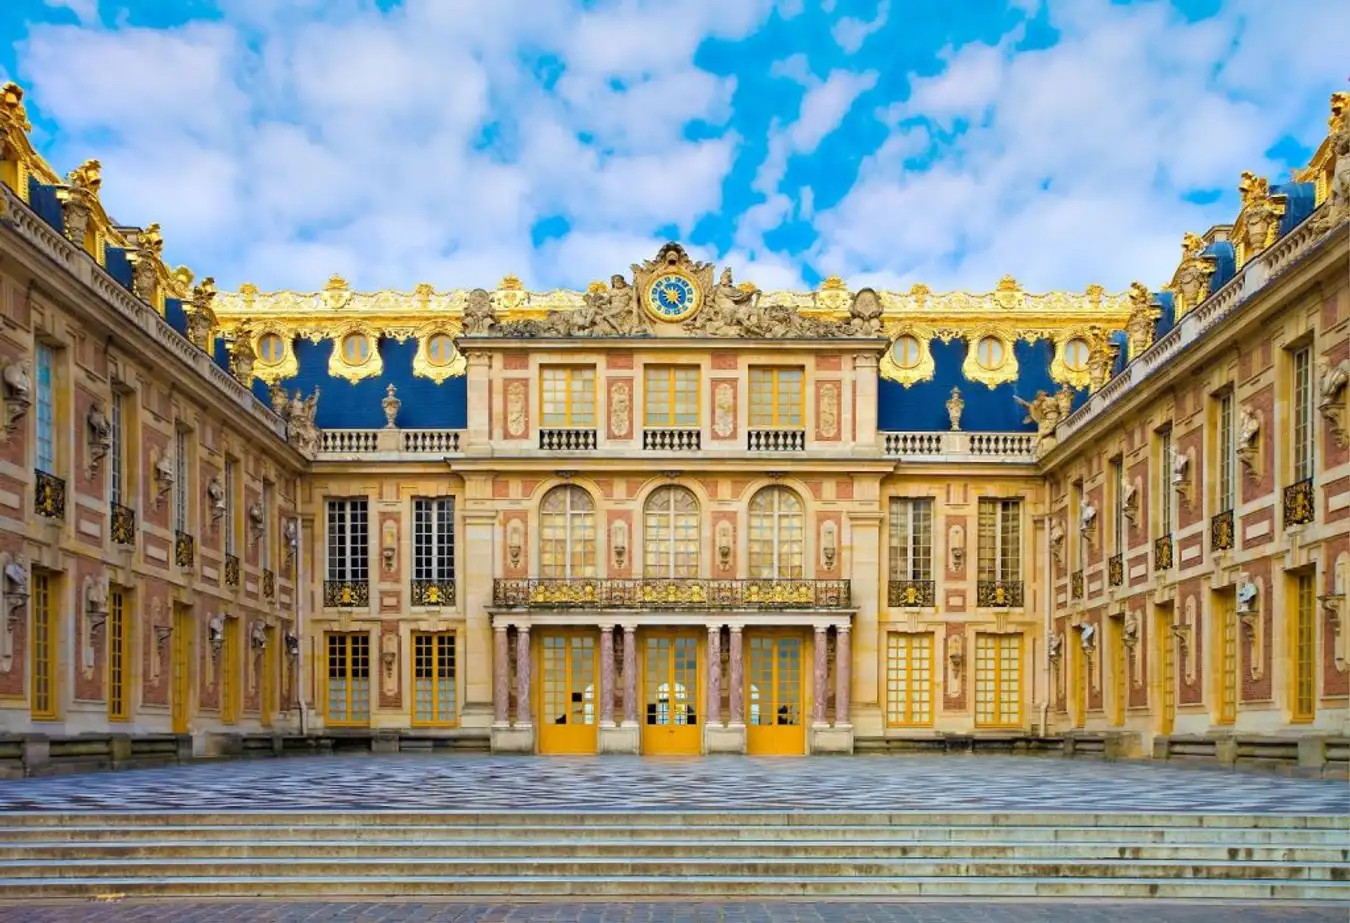 Cung điện Versailles được xem là tinh hoa nghệ thuật kiến trúc Pháp trong suốt thế kỷ 17 và 18